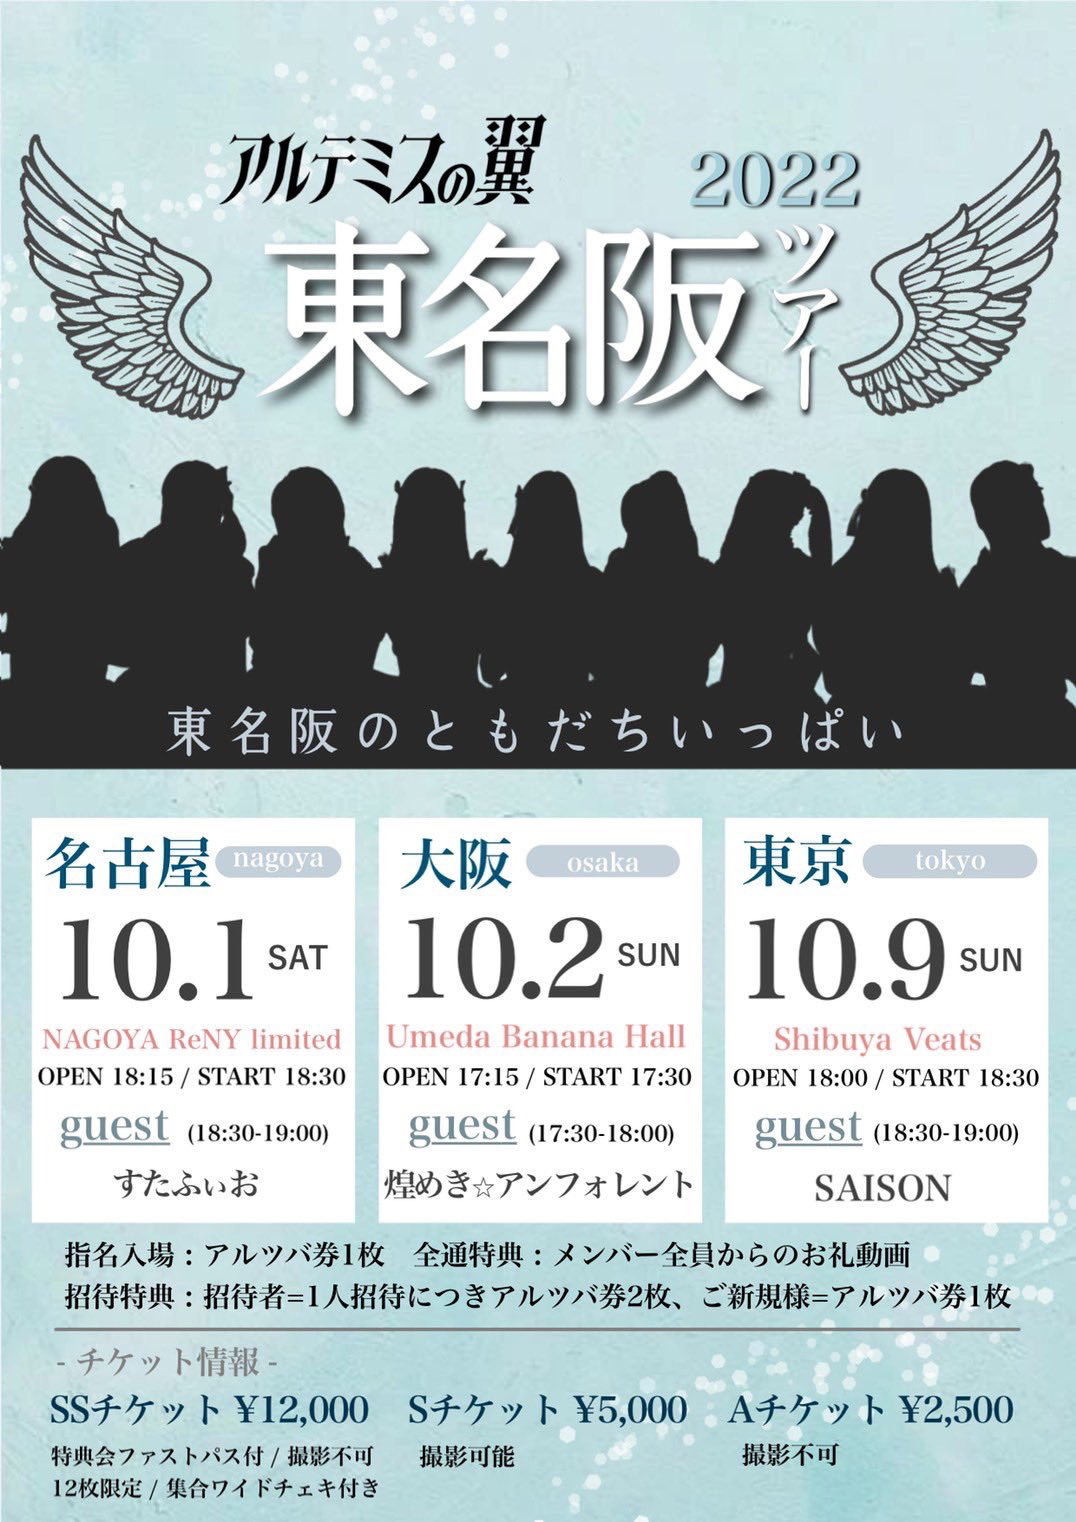 アルテミスの翼 東名阪ツアー2022 「東名阪のともだちいっぱい」東京公演